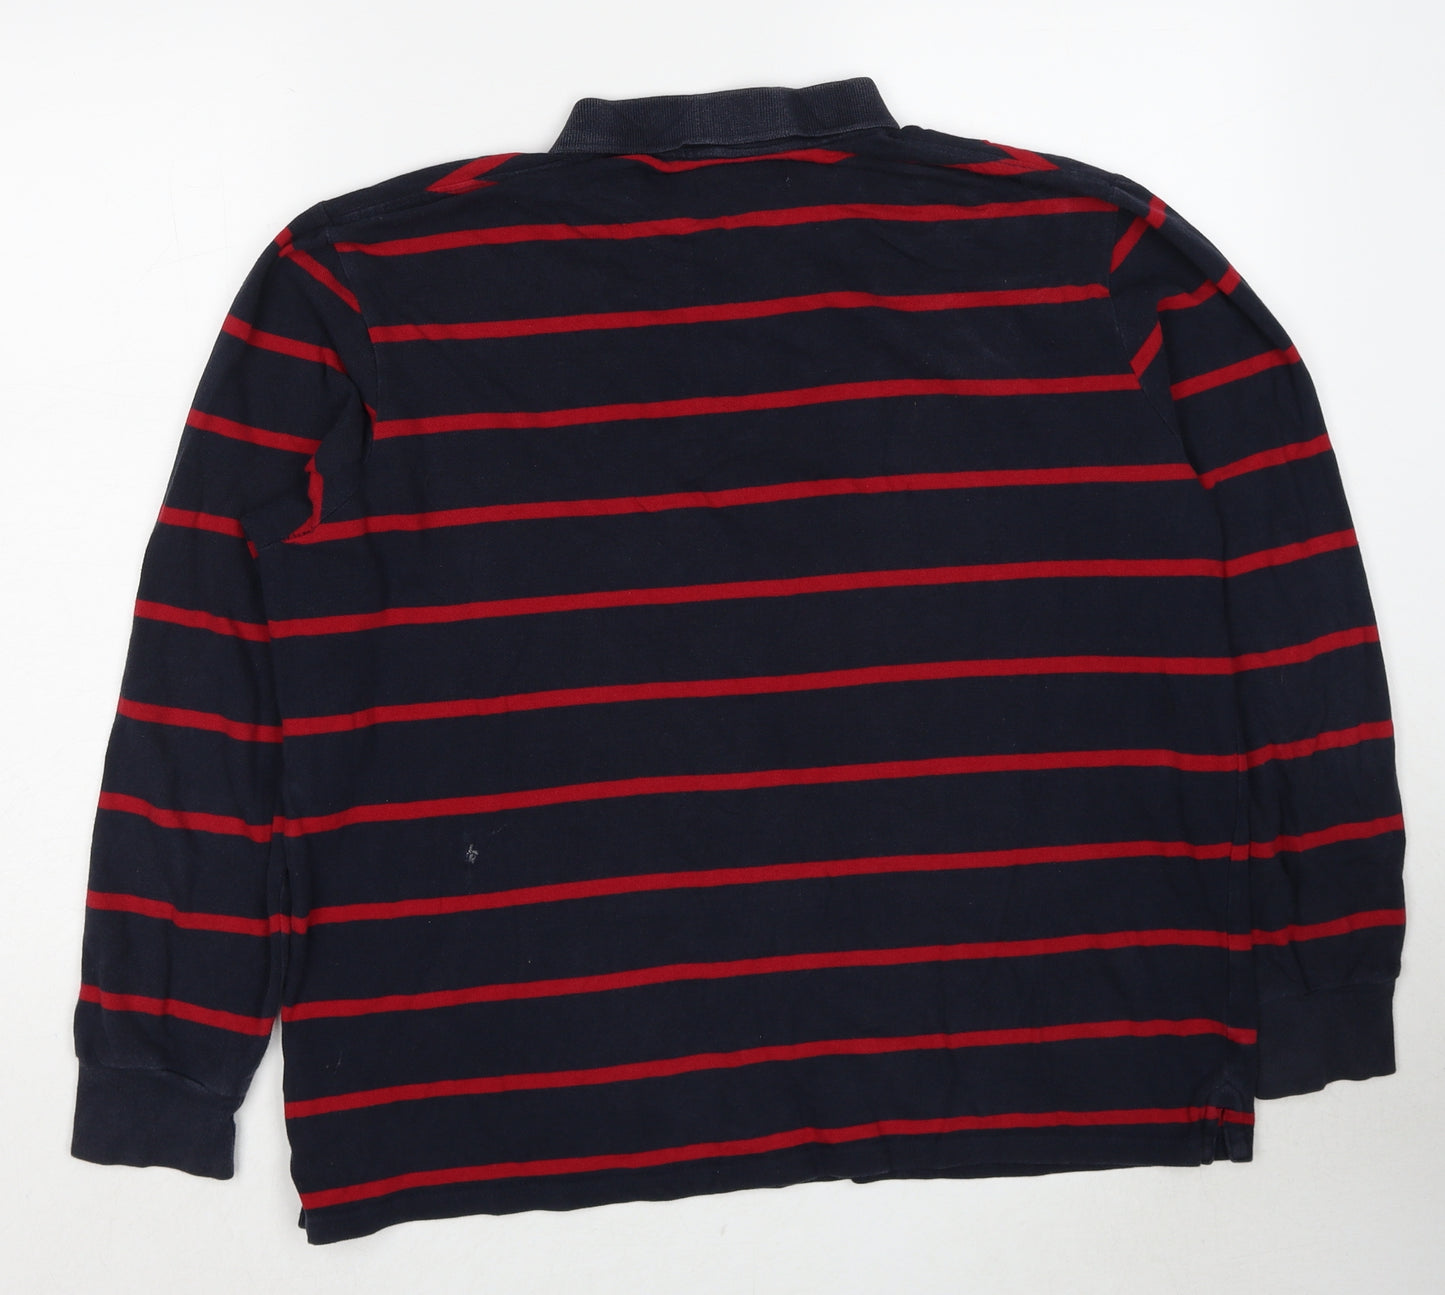 Atlantic Bay Mens Black Striped Cotton Polo Size L Collared Pullover